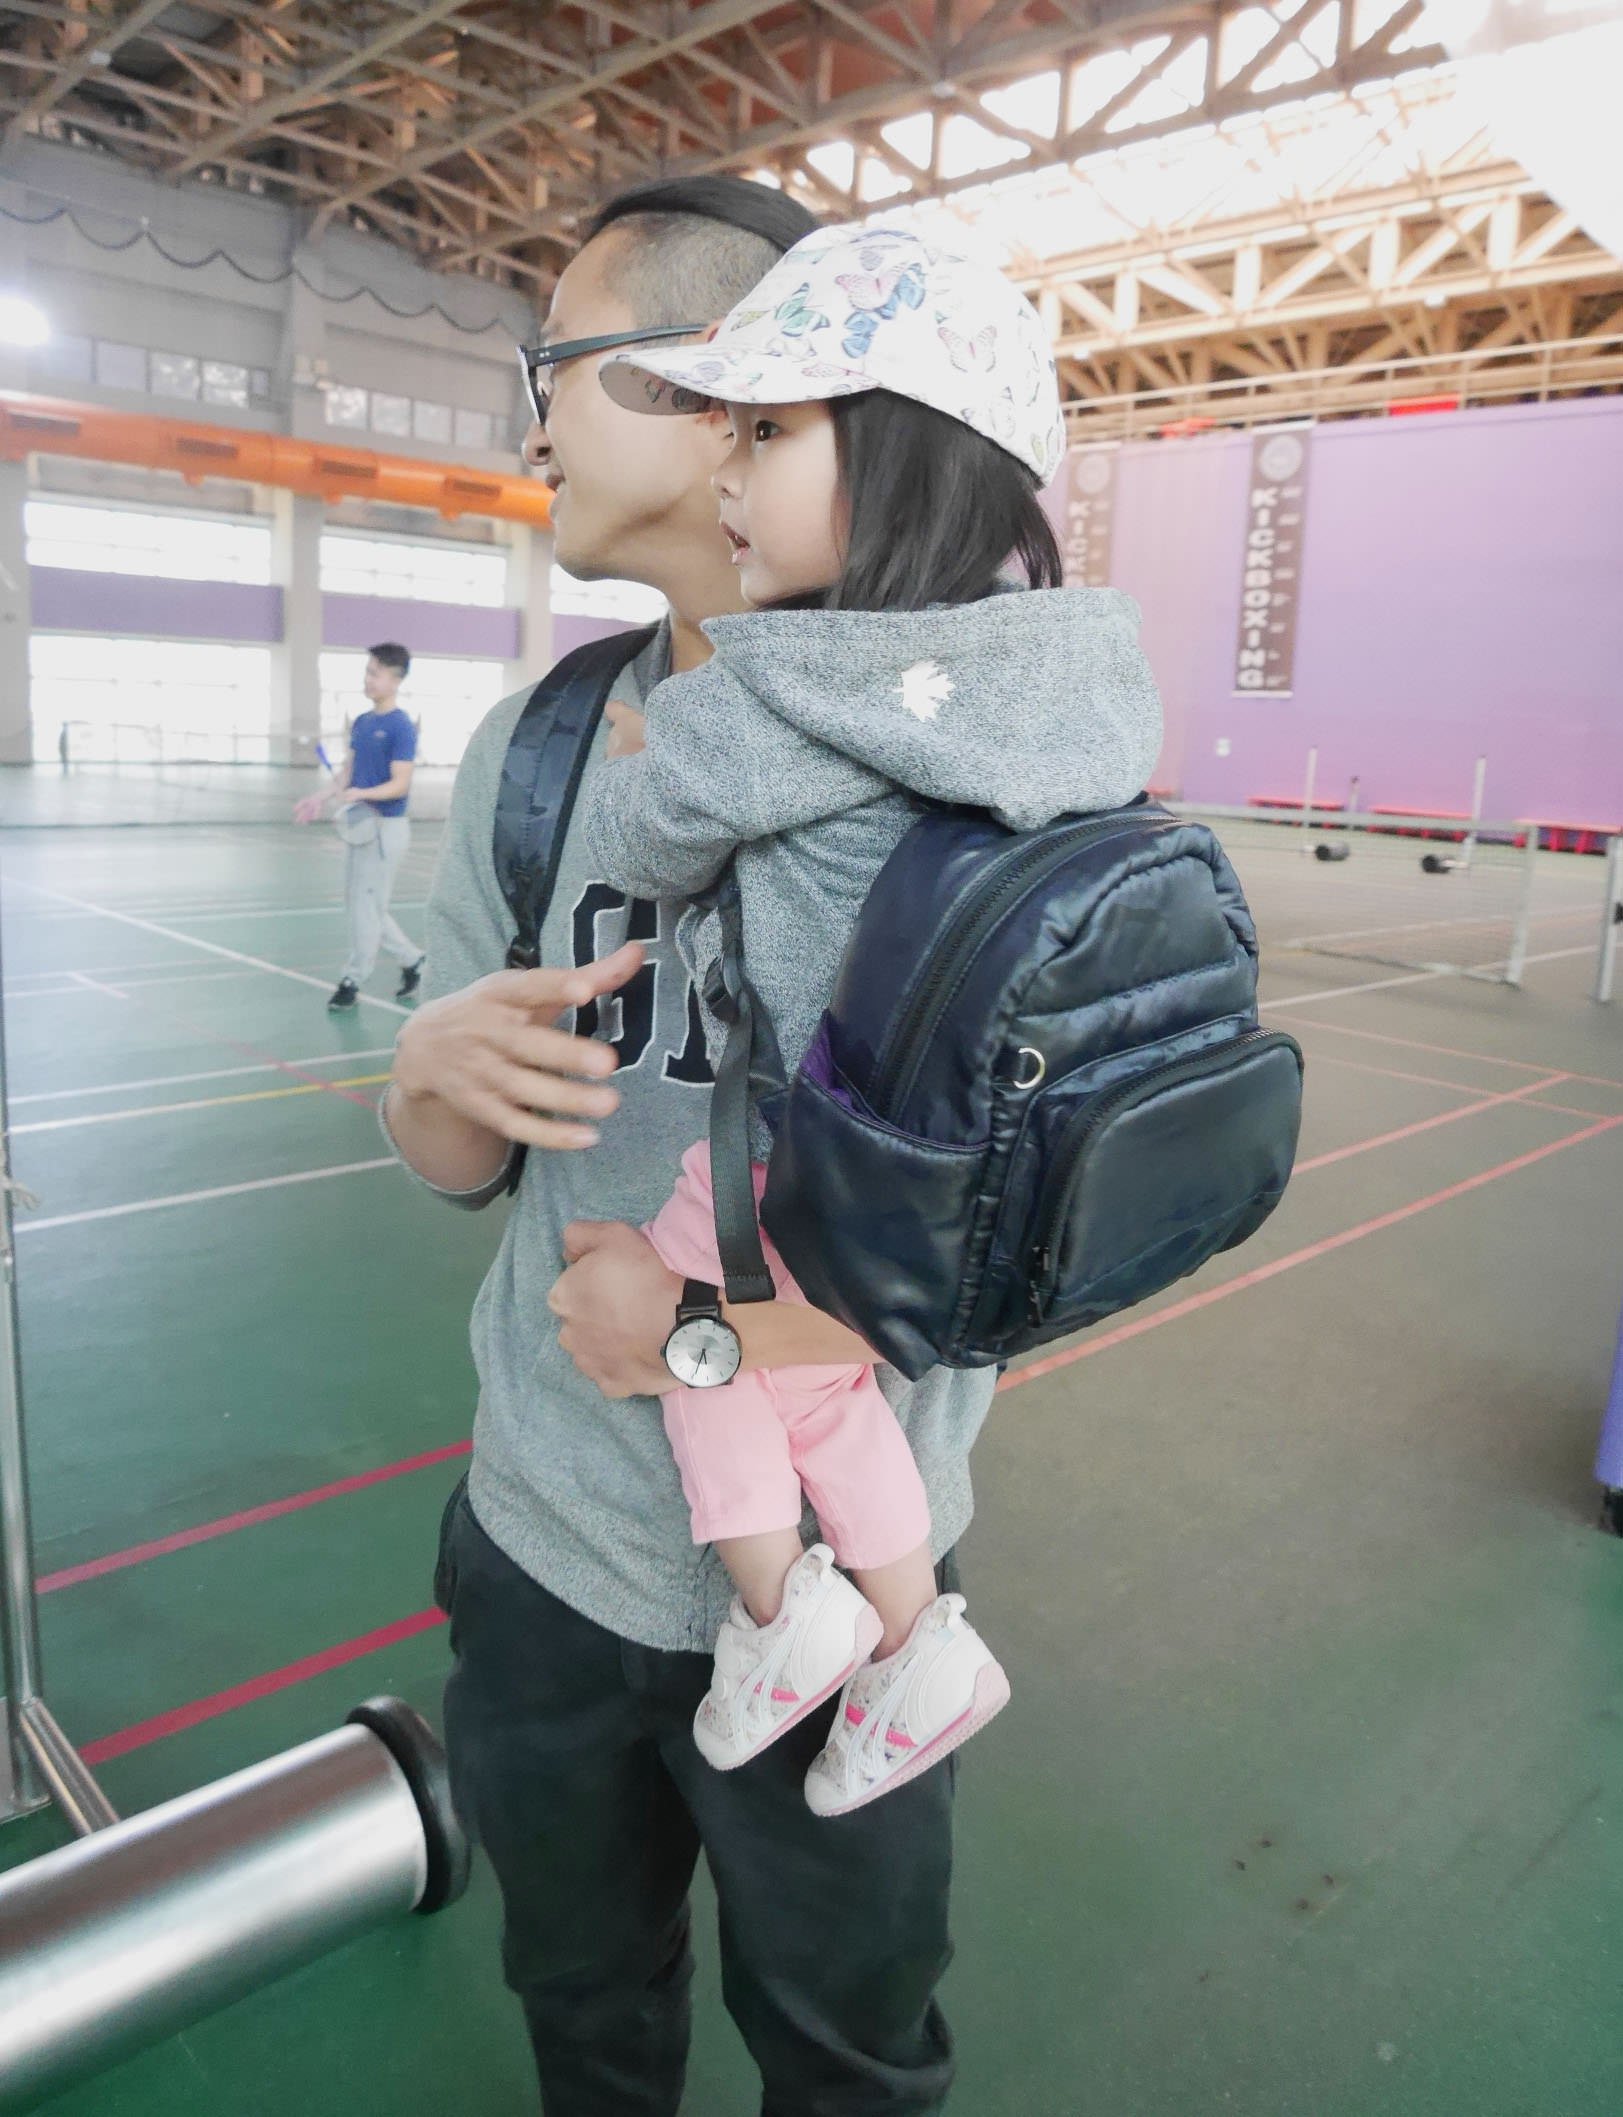 [啾團] Haruhonpo小晴天本舖媽媽們心中第一的媽媽包,結合造型與實用性的親子包